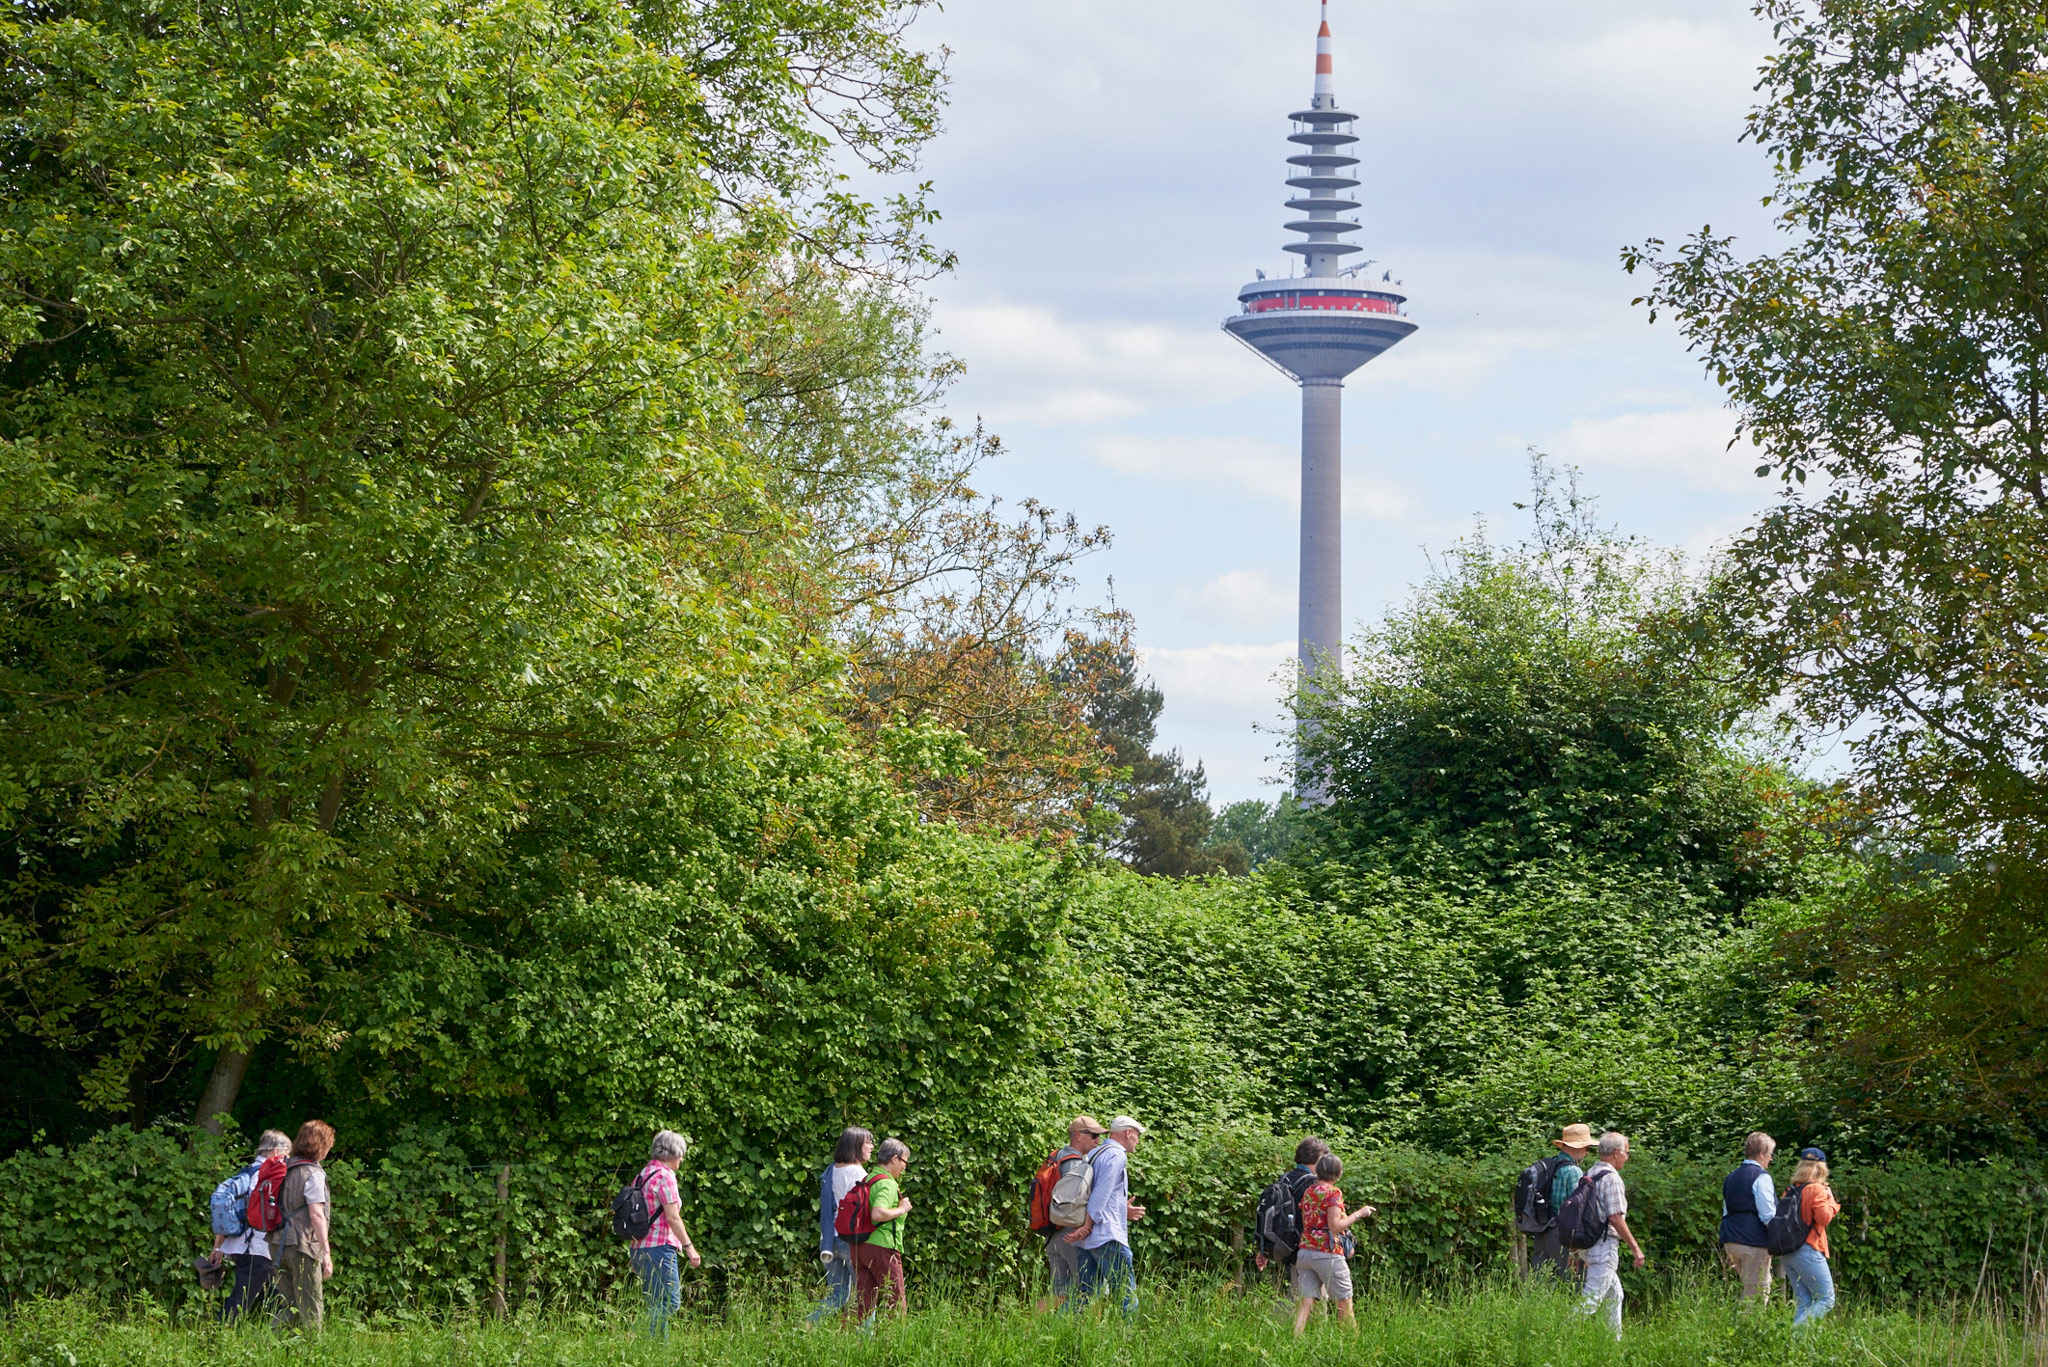 Wandern im grünen mit dem Fernsehturm im Blick © Umweltamt der Stadt Frankfurt/Stefan Cop